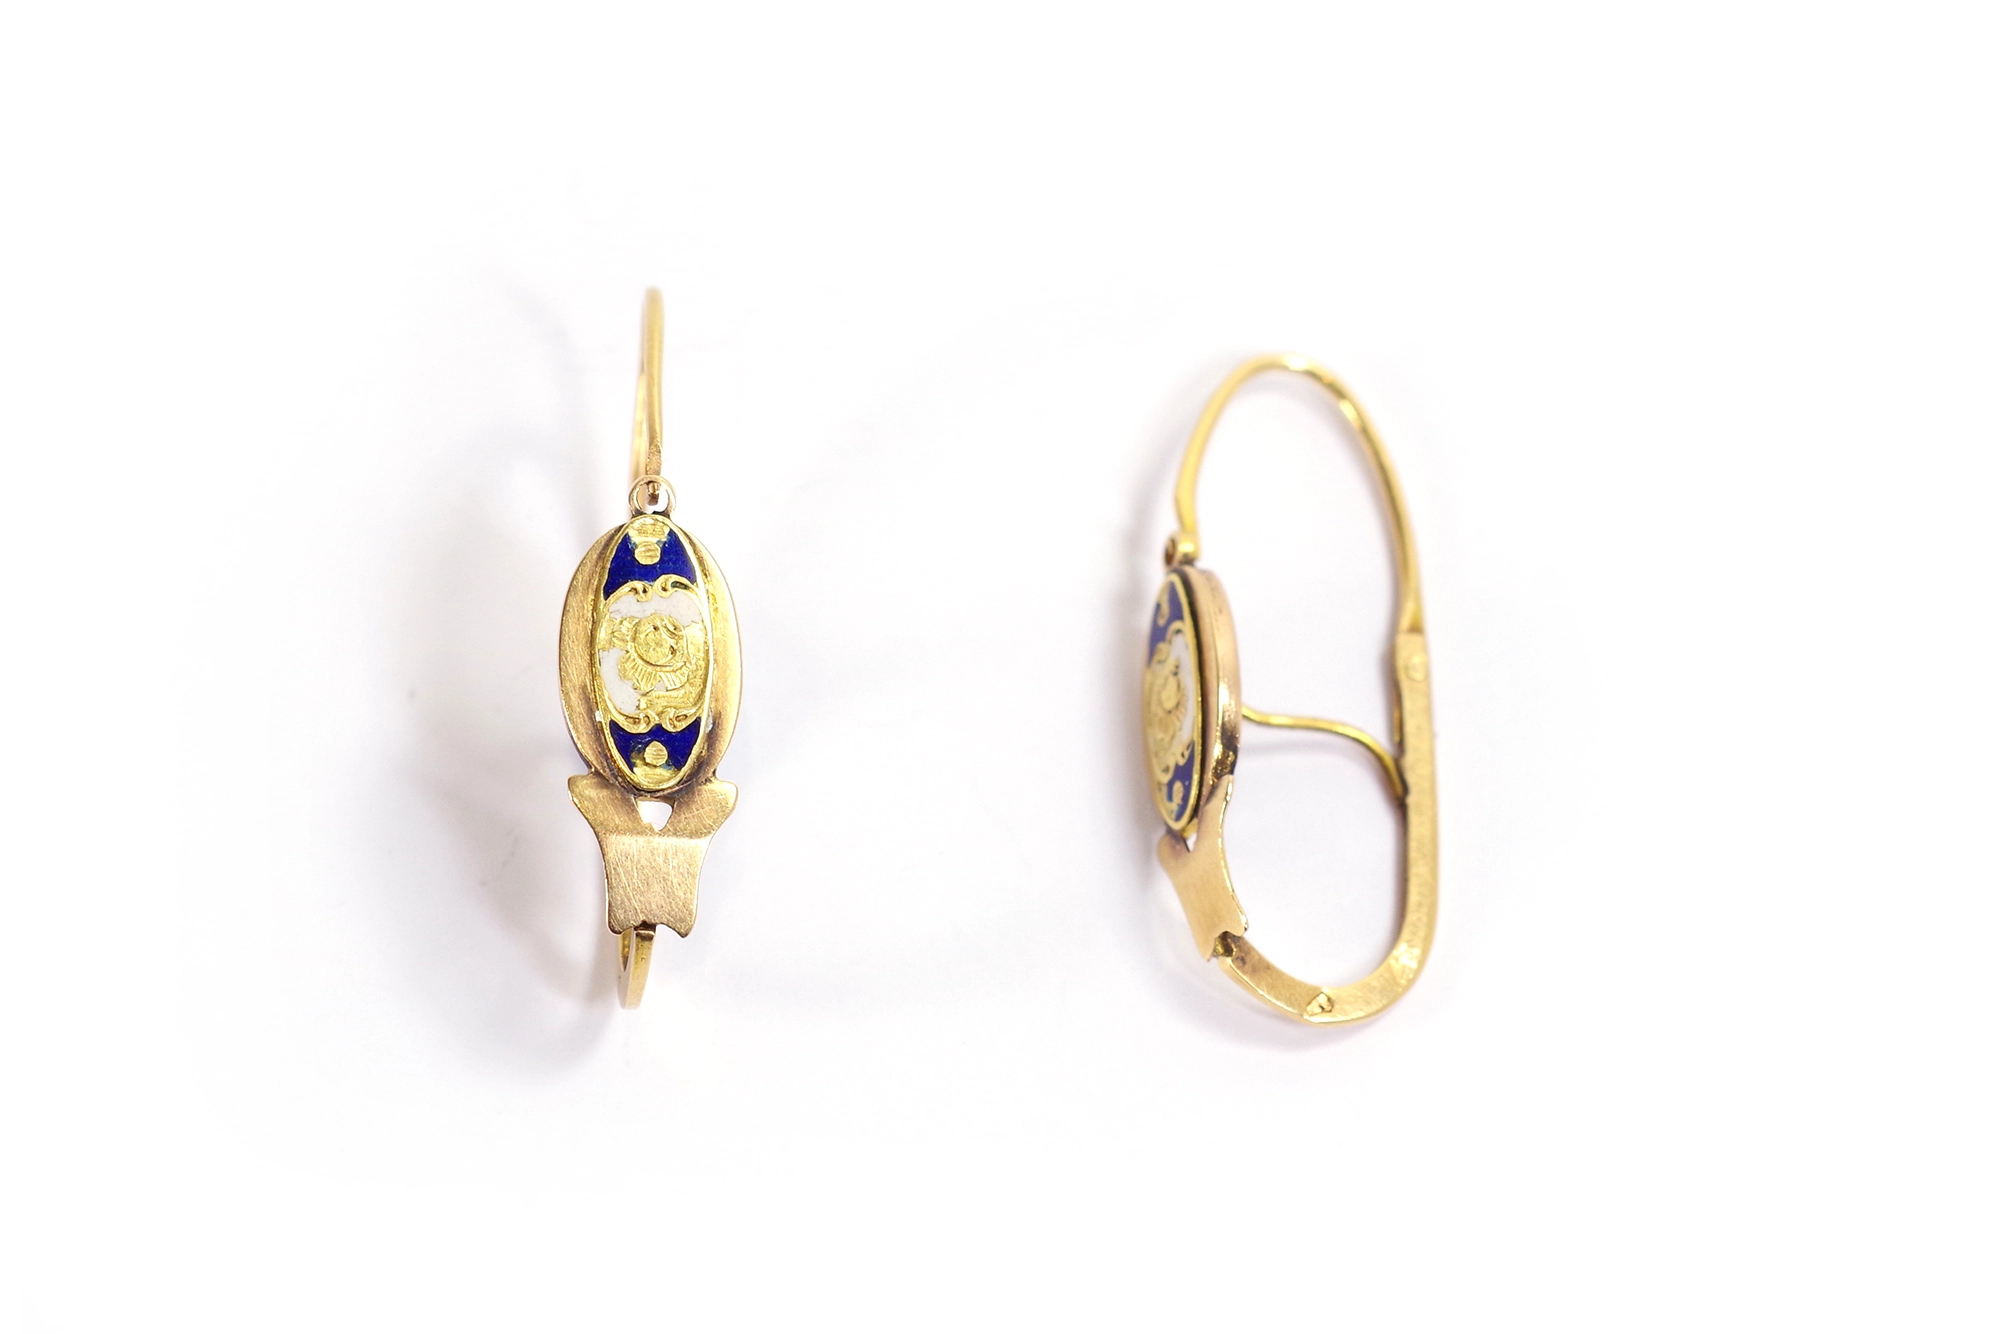 Antique french enamel poissardes earrings